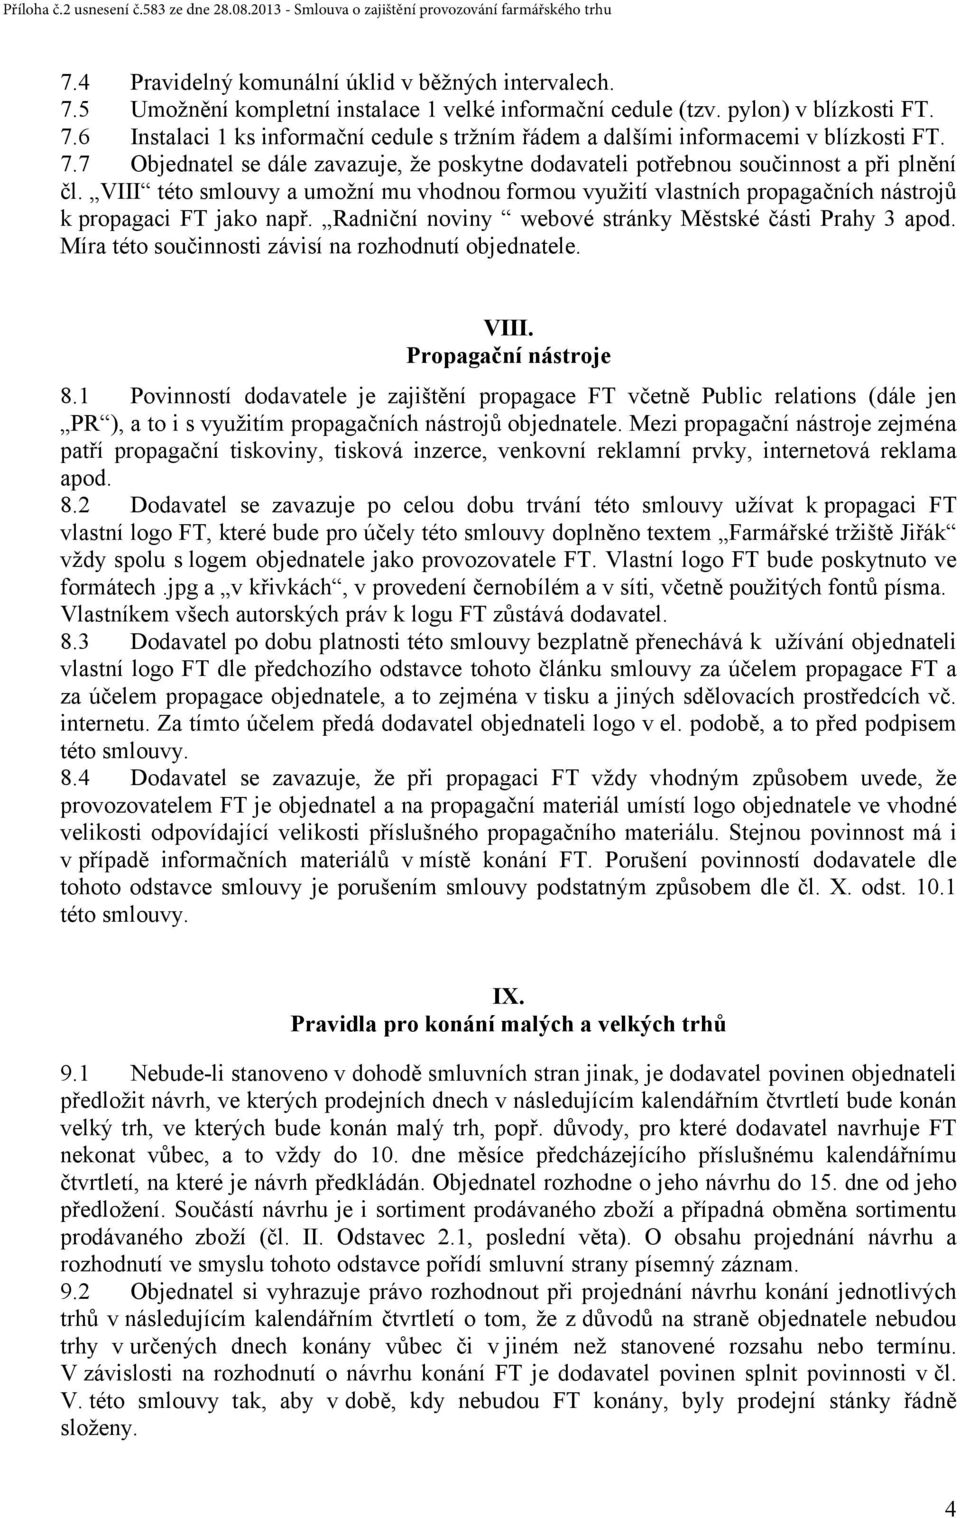 VIII této smlouvy a umožní mu vhodnou formou využití vlastních propagačních nástrojů k propagaci FT jako např. Radniční noviny webové stránky Městské části Prahy 3 apod.